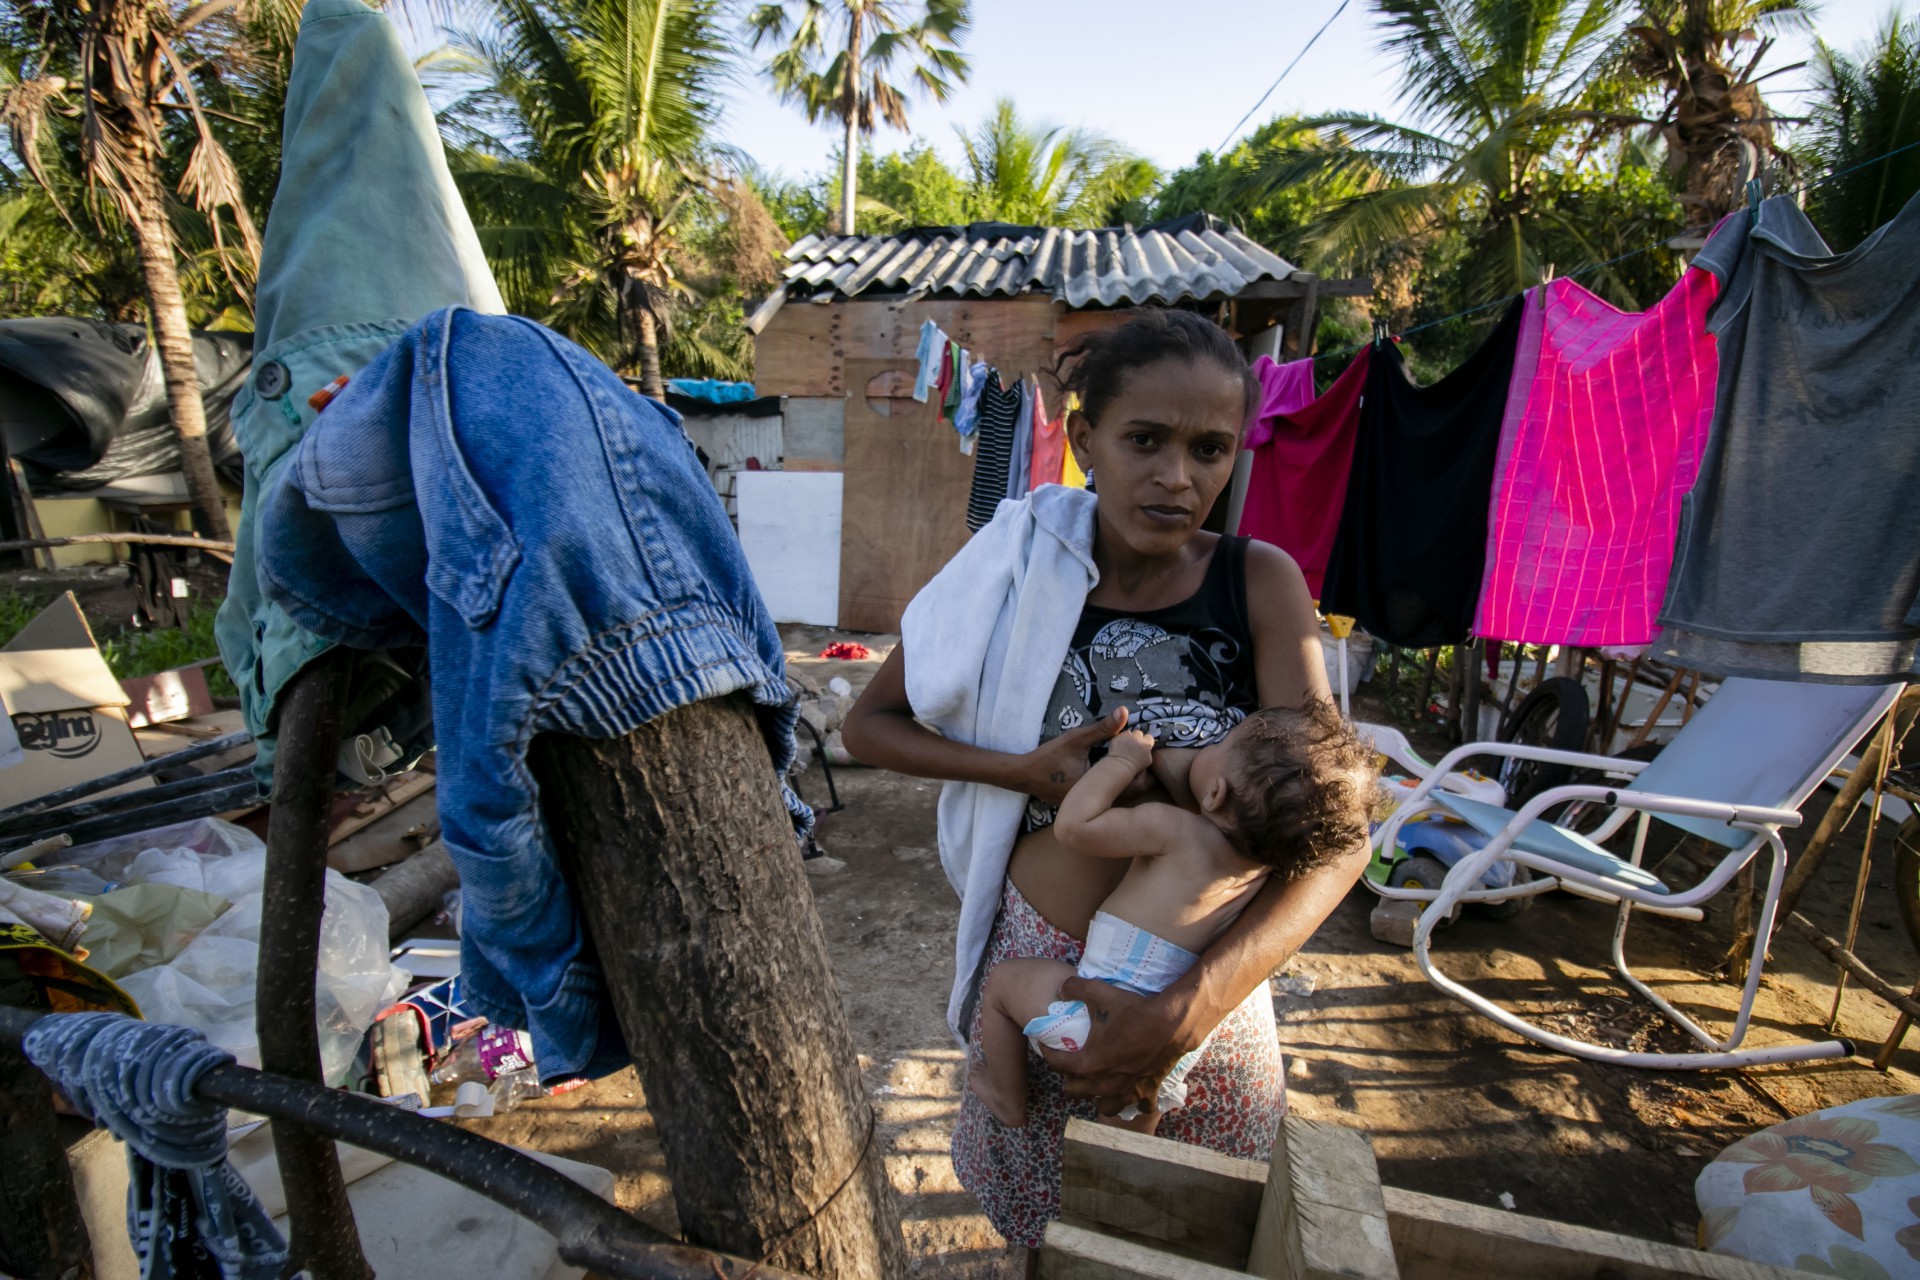 A Ocupação Carlos Marighella começou durante a pandemia de Covid-19. Em 2020 eram 85 famílias vivendo em barracos no terreno, posteriormente chegaram mais duas famíliasa (Foto: Aurelio Alves/ O POVO)